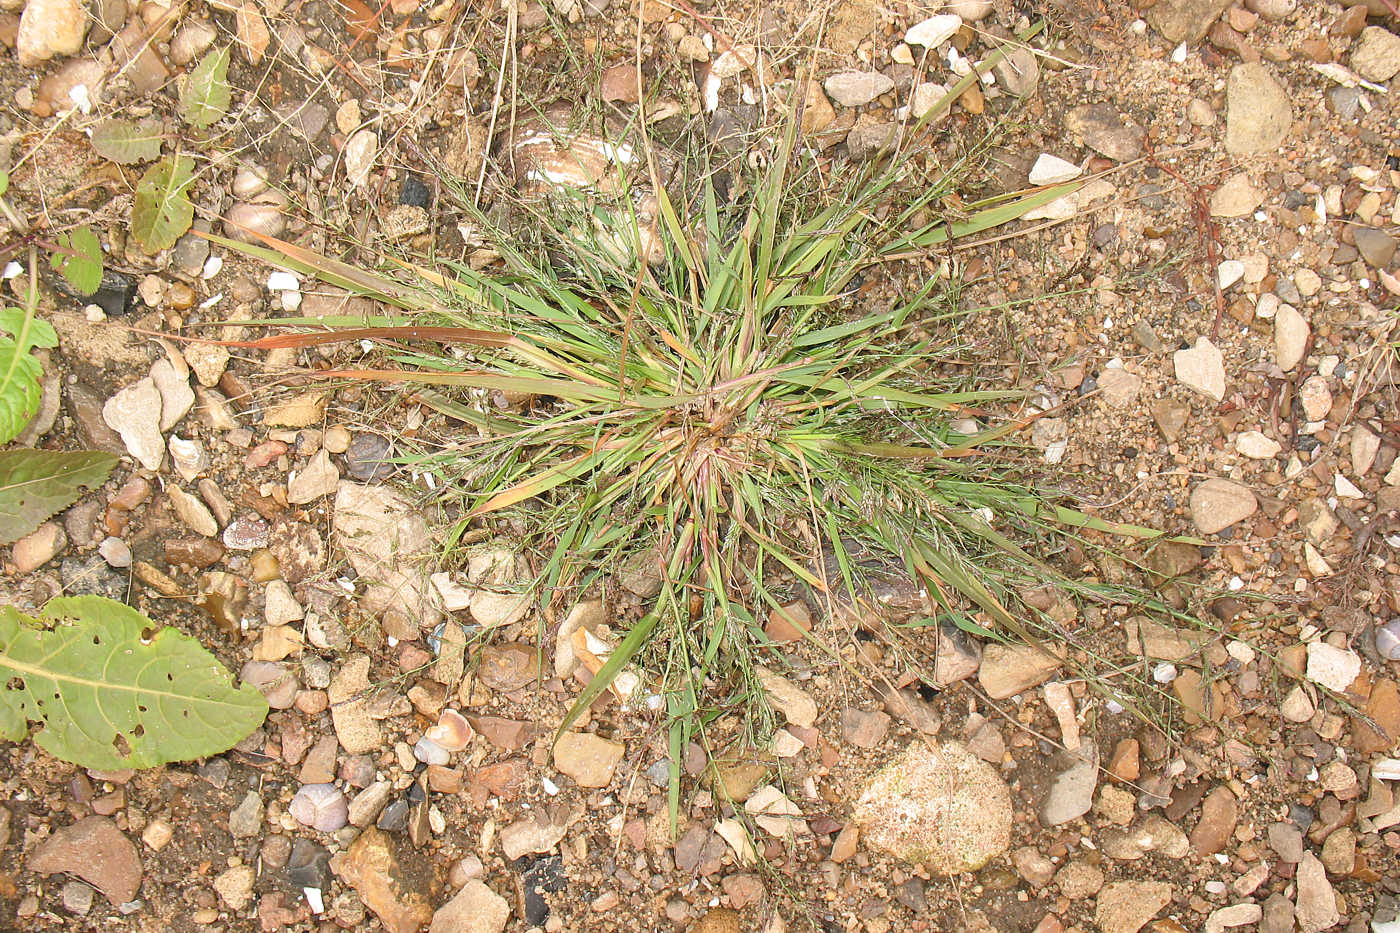 Image of genus Eragrostis specimen.